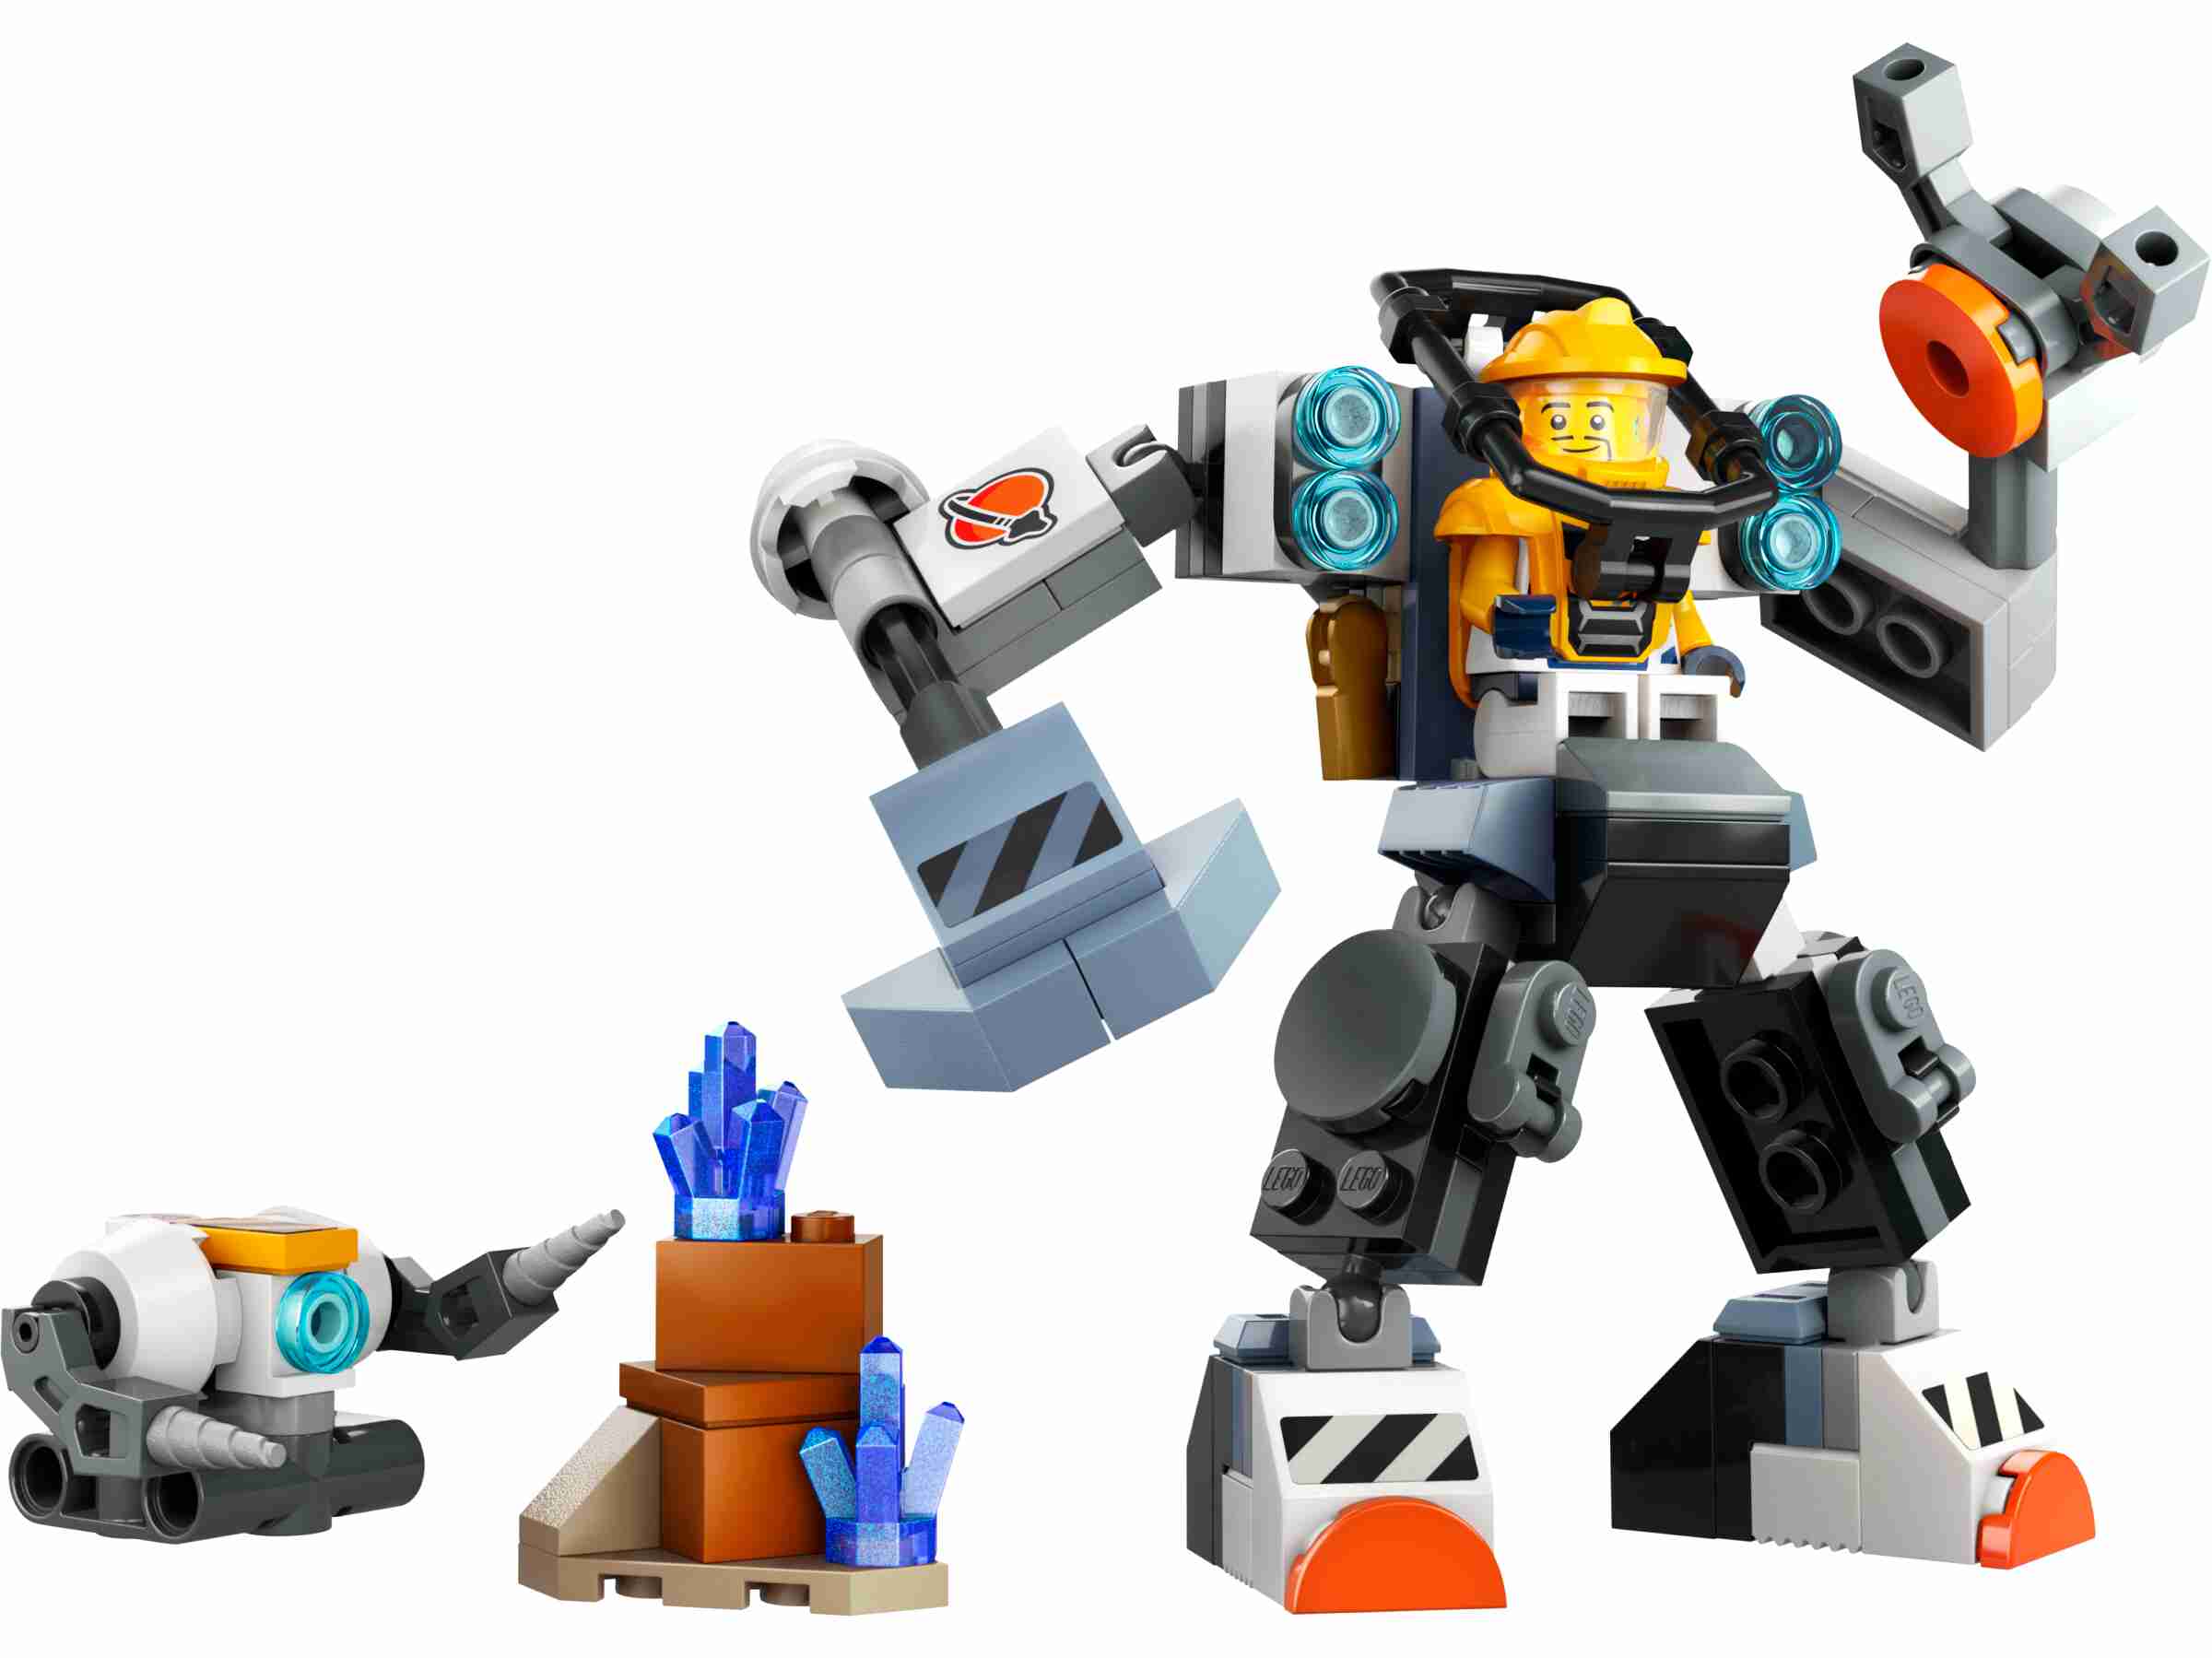 LEGO 60428 City Weltraum-Mech, 1 Minifigur, Planetenkulisse, Weltraum-Bauroboter